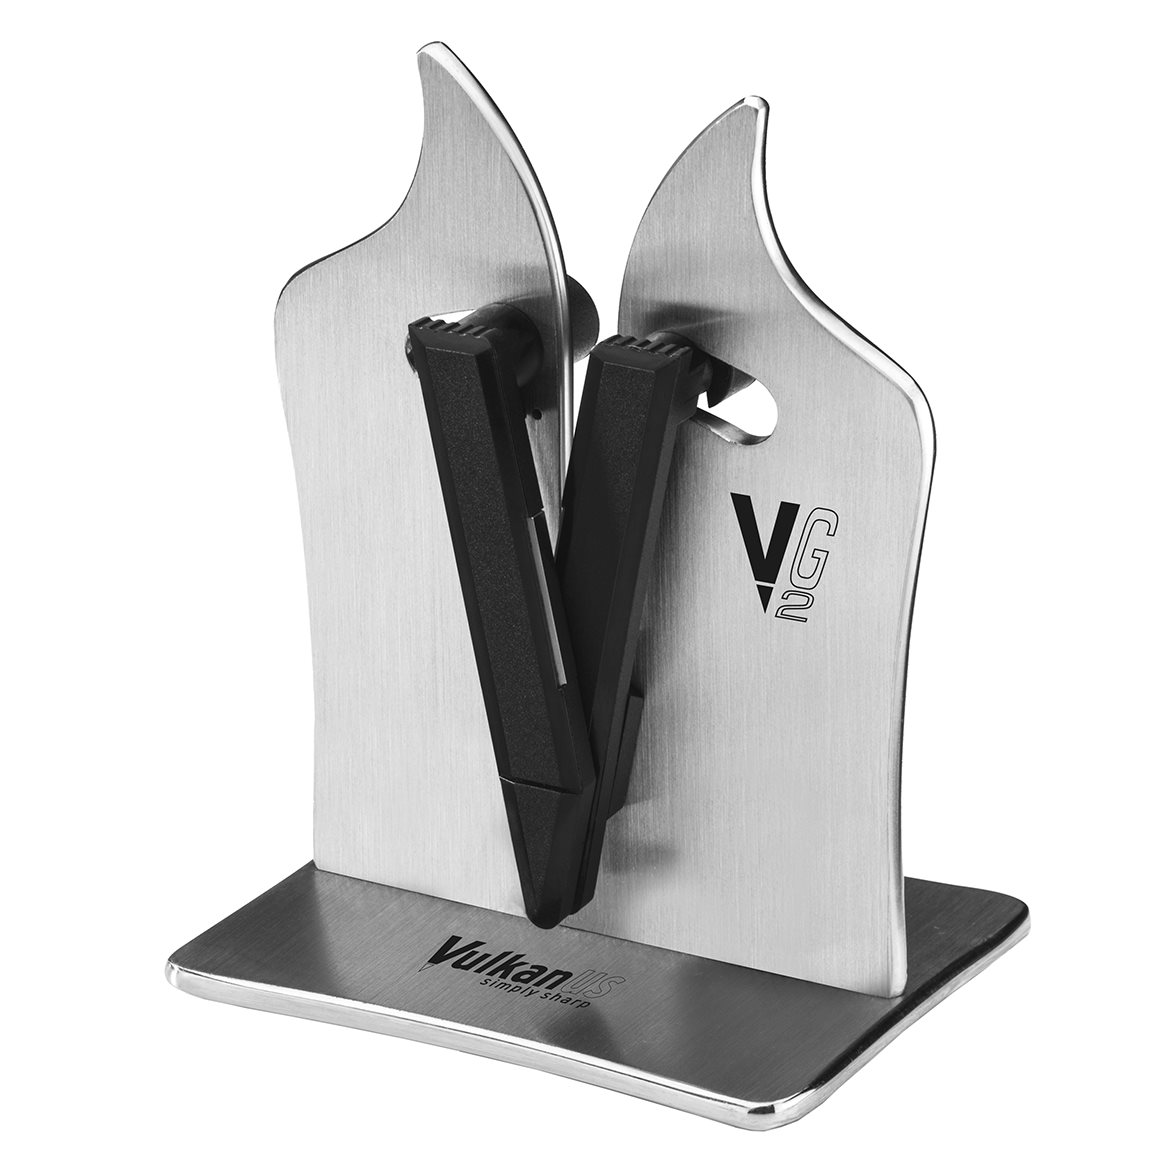 Vulkanus VG2 Professional Knivsliper